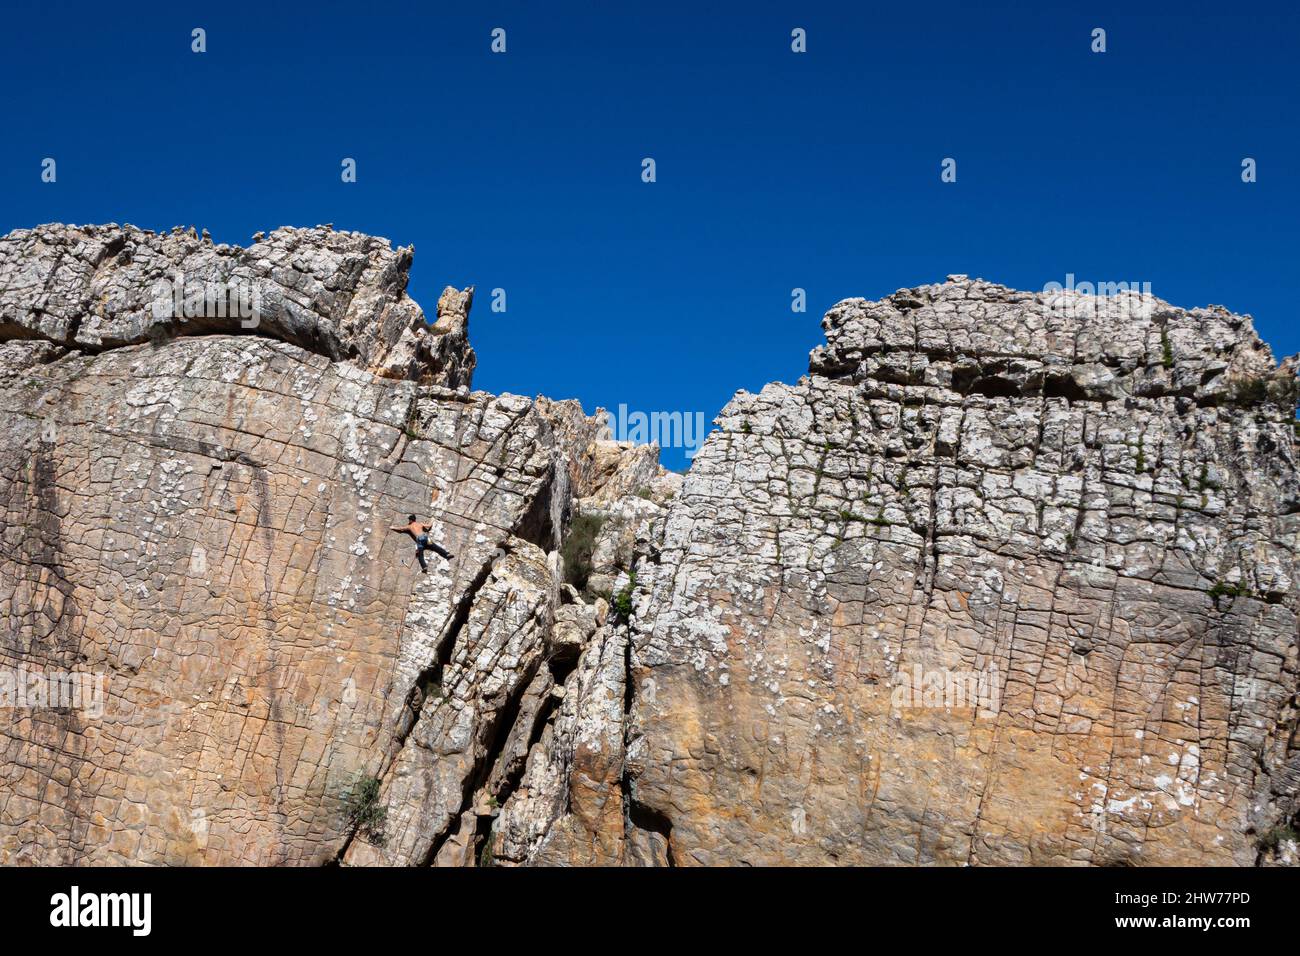 Single male person solo climber climbing a vertical pitch route in Zona de Escalada Tajo del Buho in Betis, near Tarifa in Spain Stock Photo